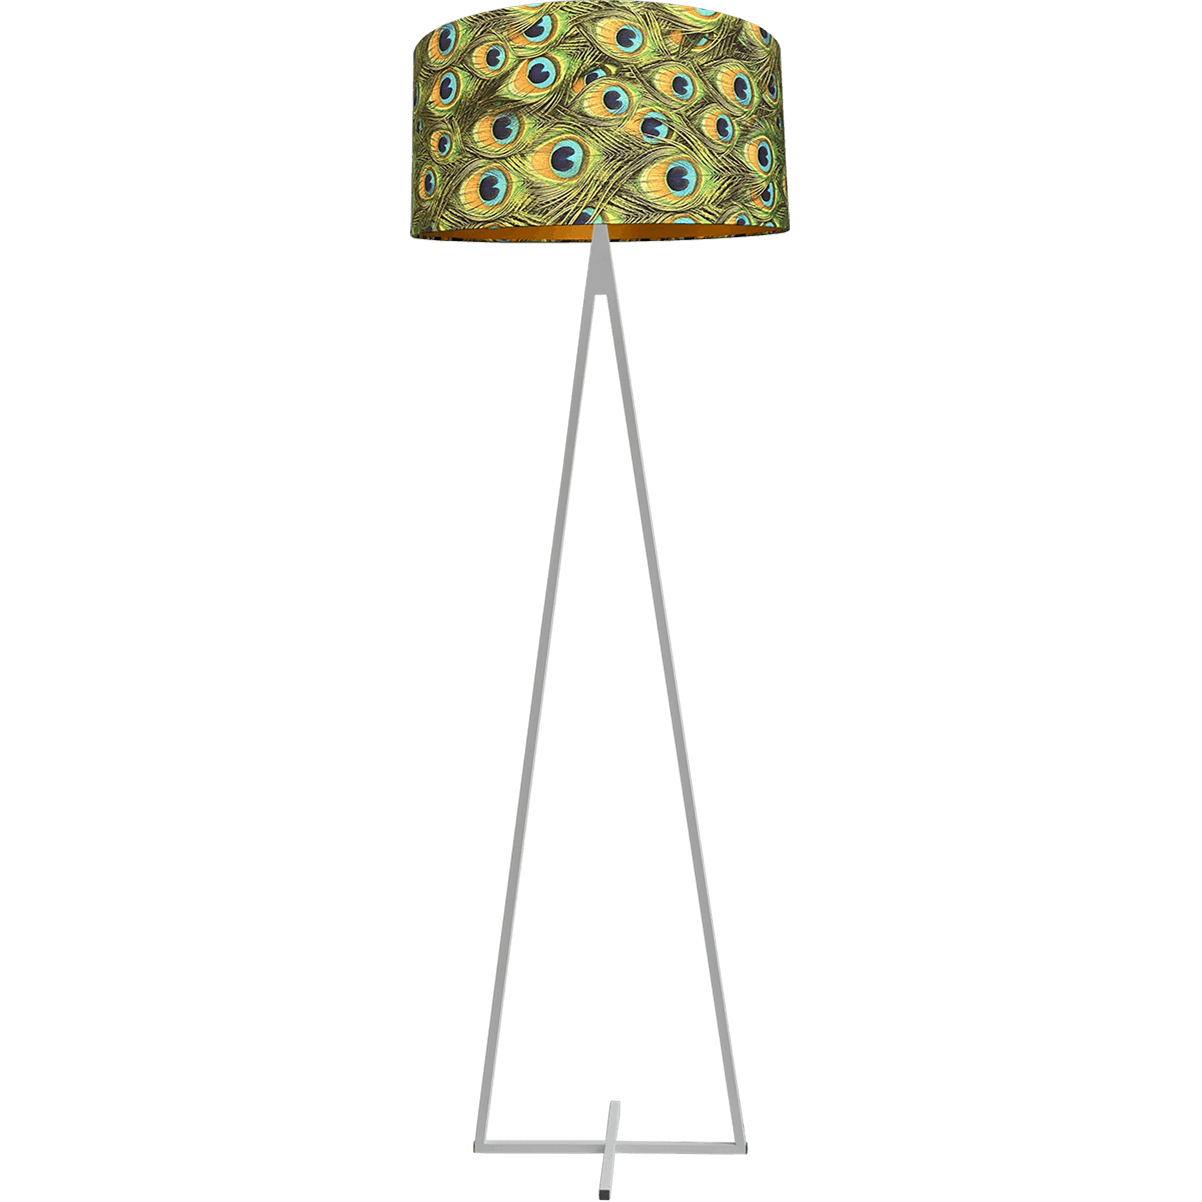 Vloerlamp Cross Triangle wit structuur hoogte 158cm inclusief lampenkap met peacockenveren print Artik peacock 52/52/25 - MASTERLIGHT